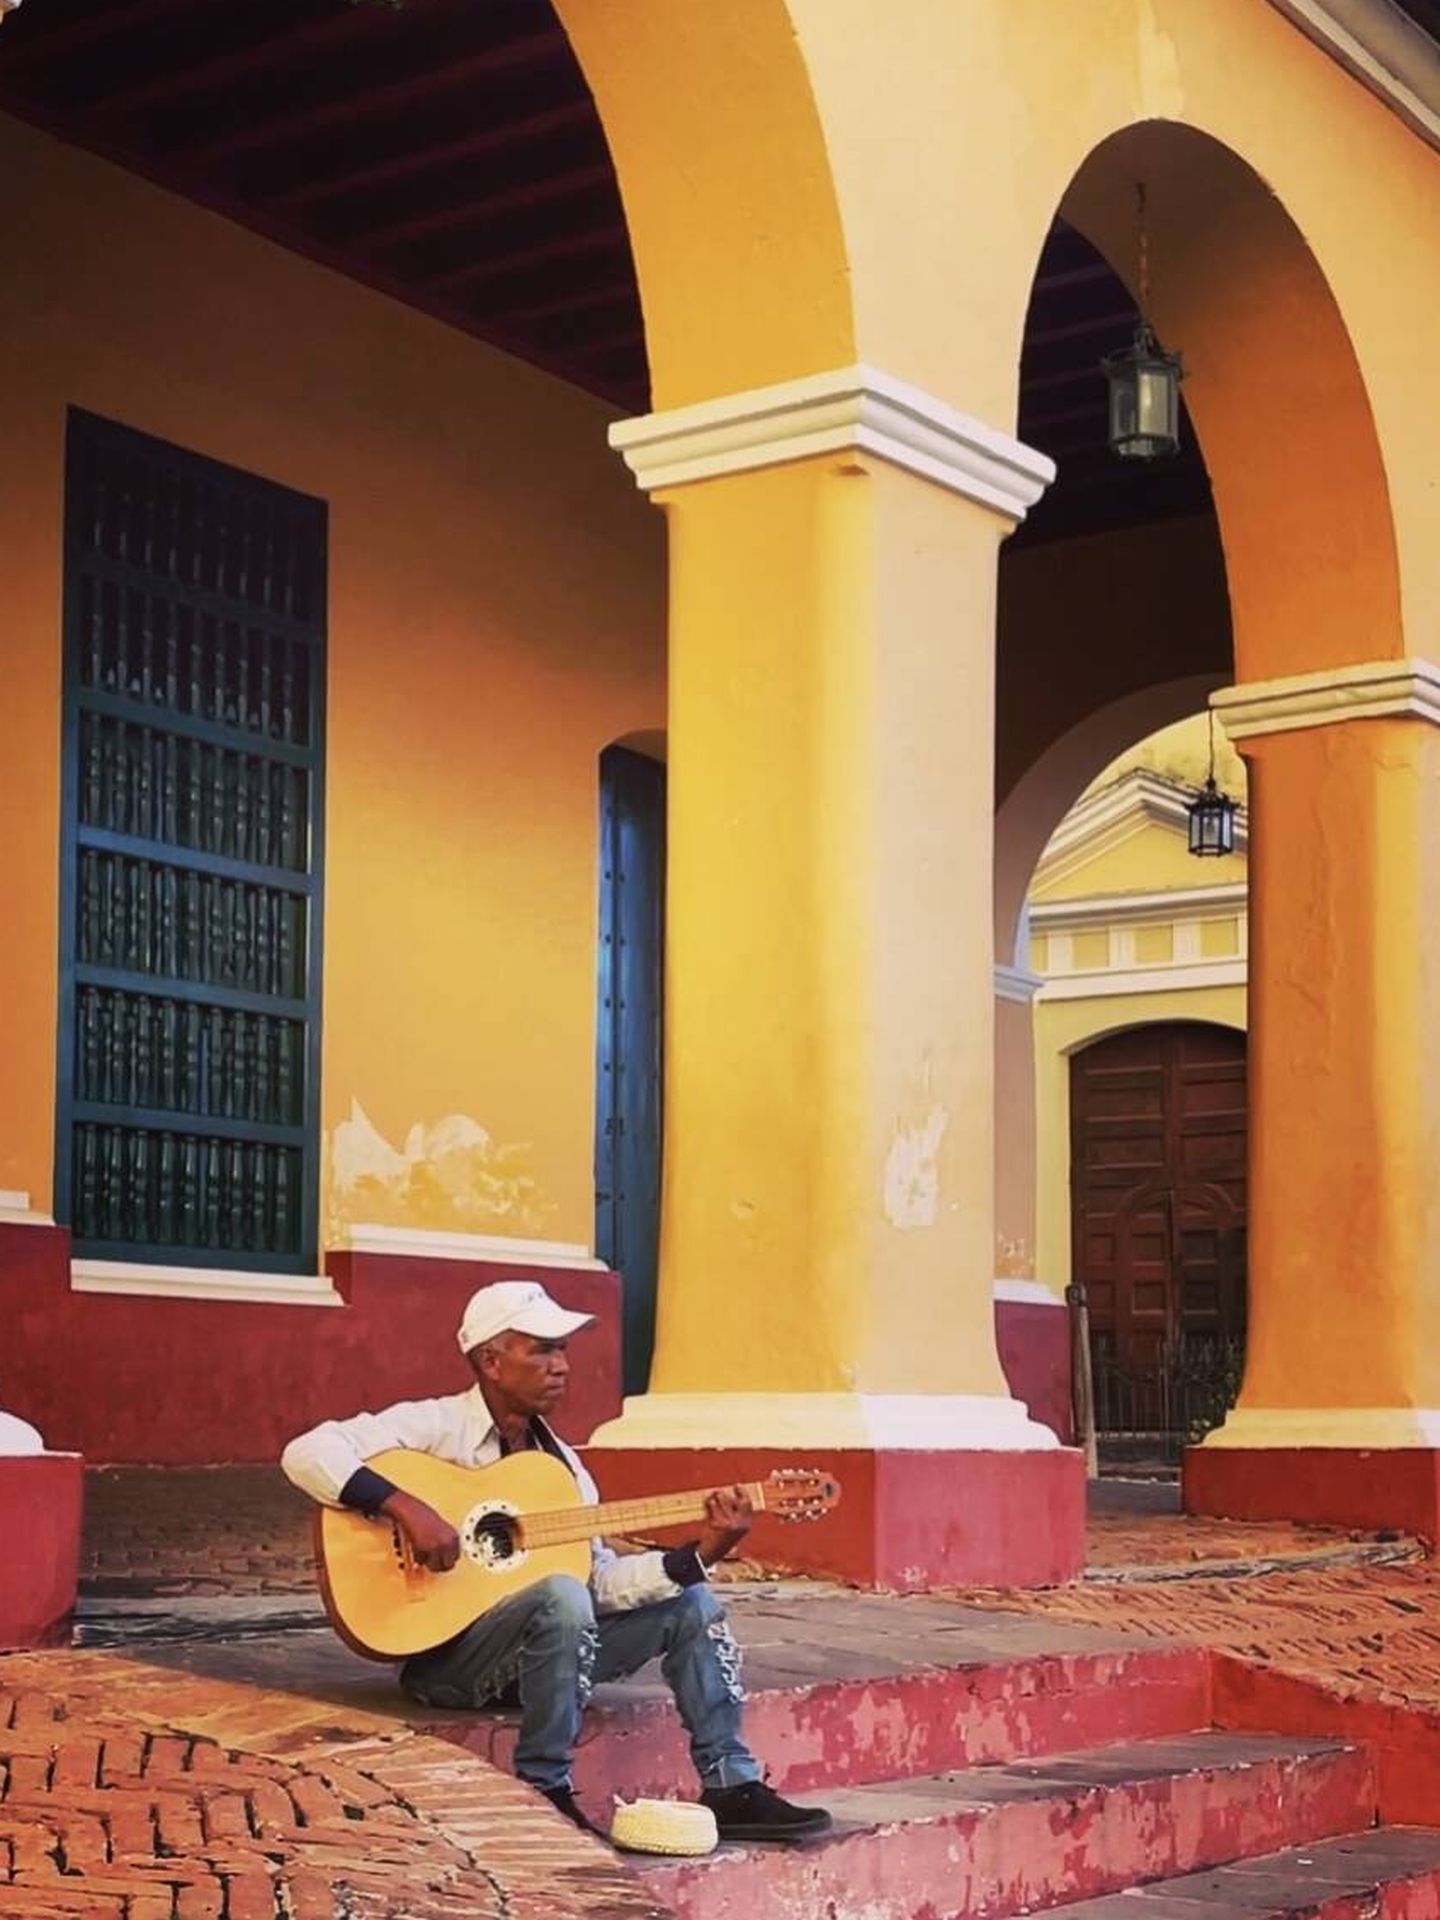 Son, salsa, mambo, guaracha... La música forma parte de Trinidad. (N. Ferreiro)